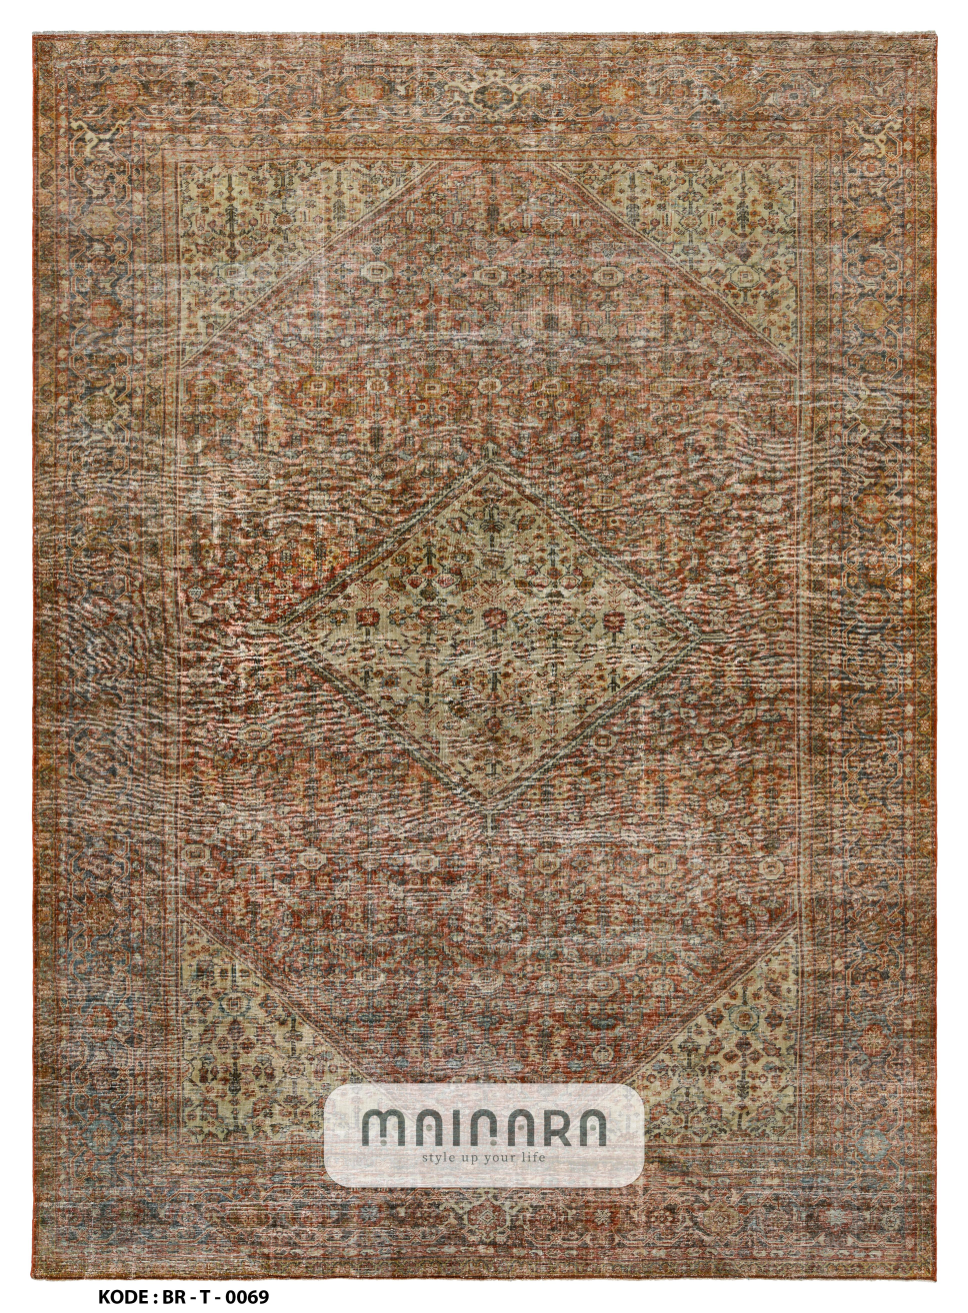 Karpet Tradisional (BR-T-0069) - Brown,Green